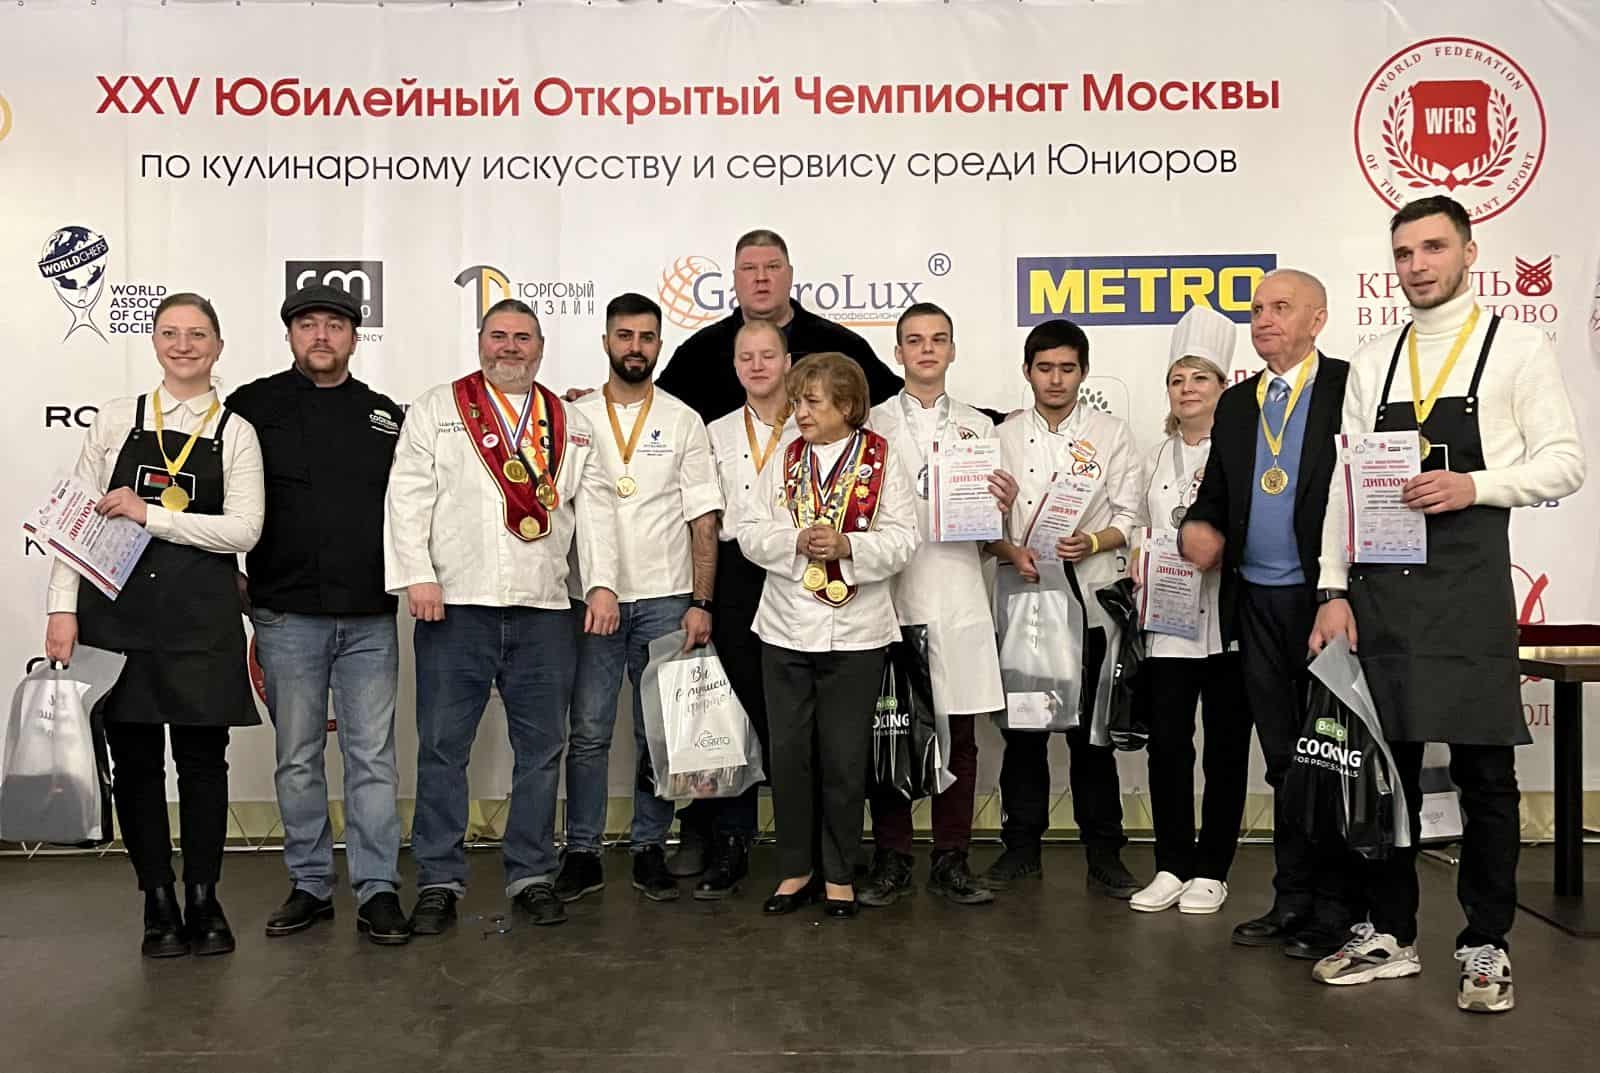 25 Юбилейный открытый чемпионат Москвы по кулинарному искусству и сервису среди юниоров